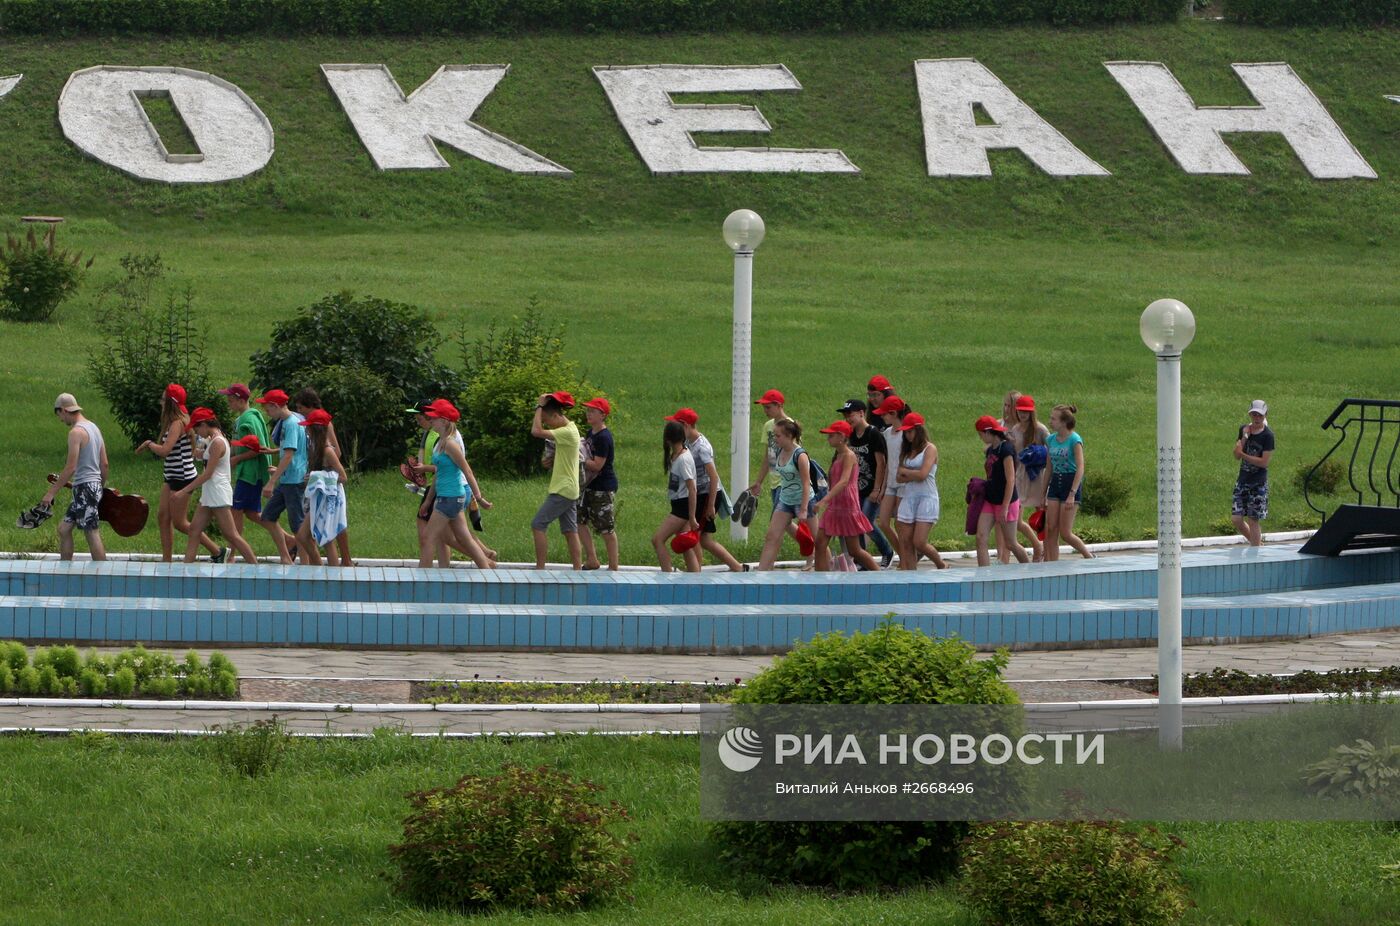 Всероссийский детский центр "Океан"